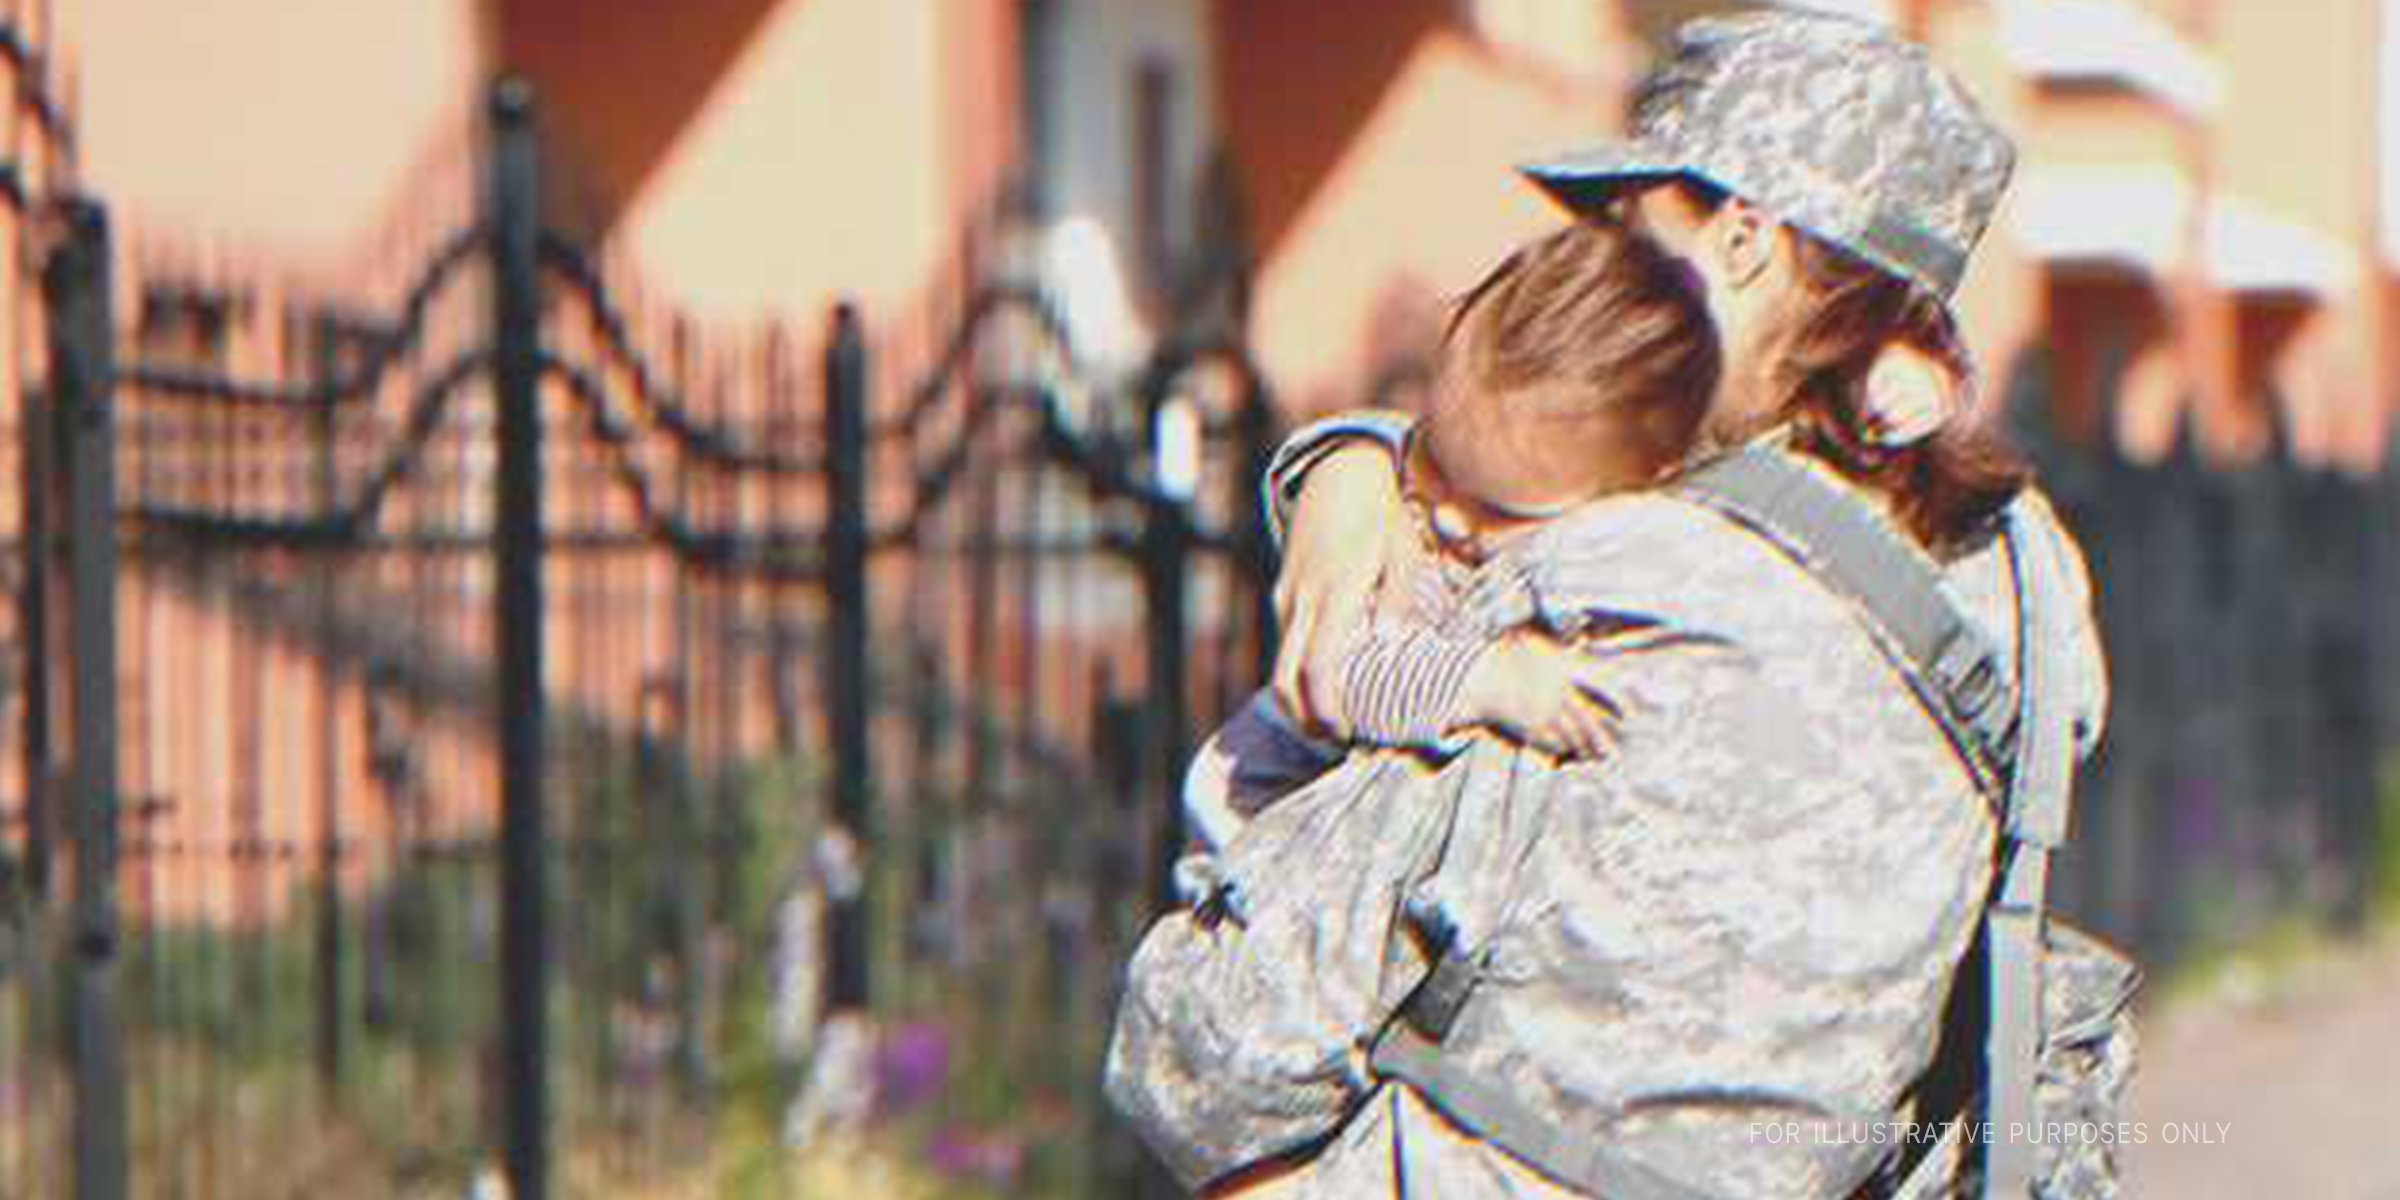 Mutter in Uniform hält Kind im Arm | Quelle: Shutterstock